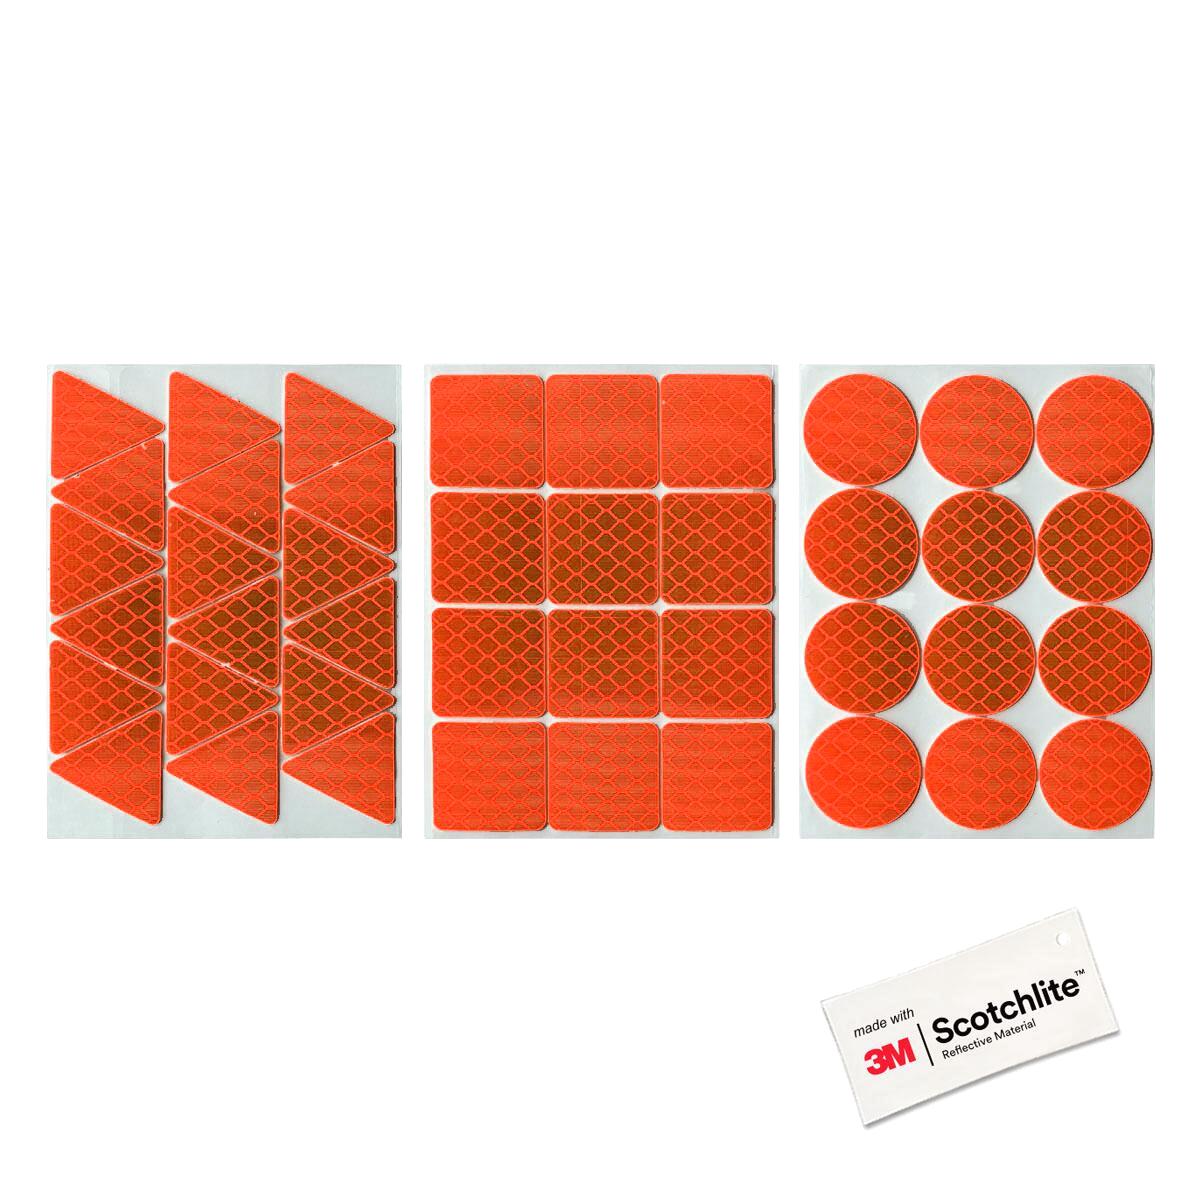 Produktabbildung der orangefarbenen Outdoor-Sticker von Salzmann